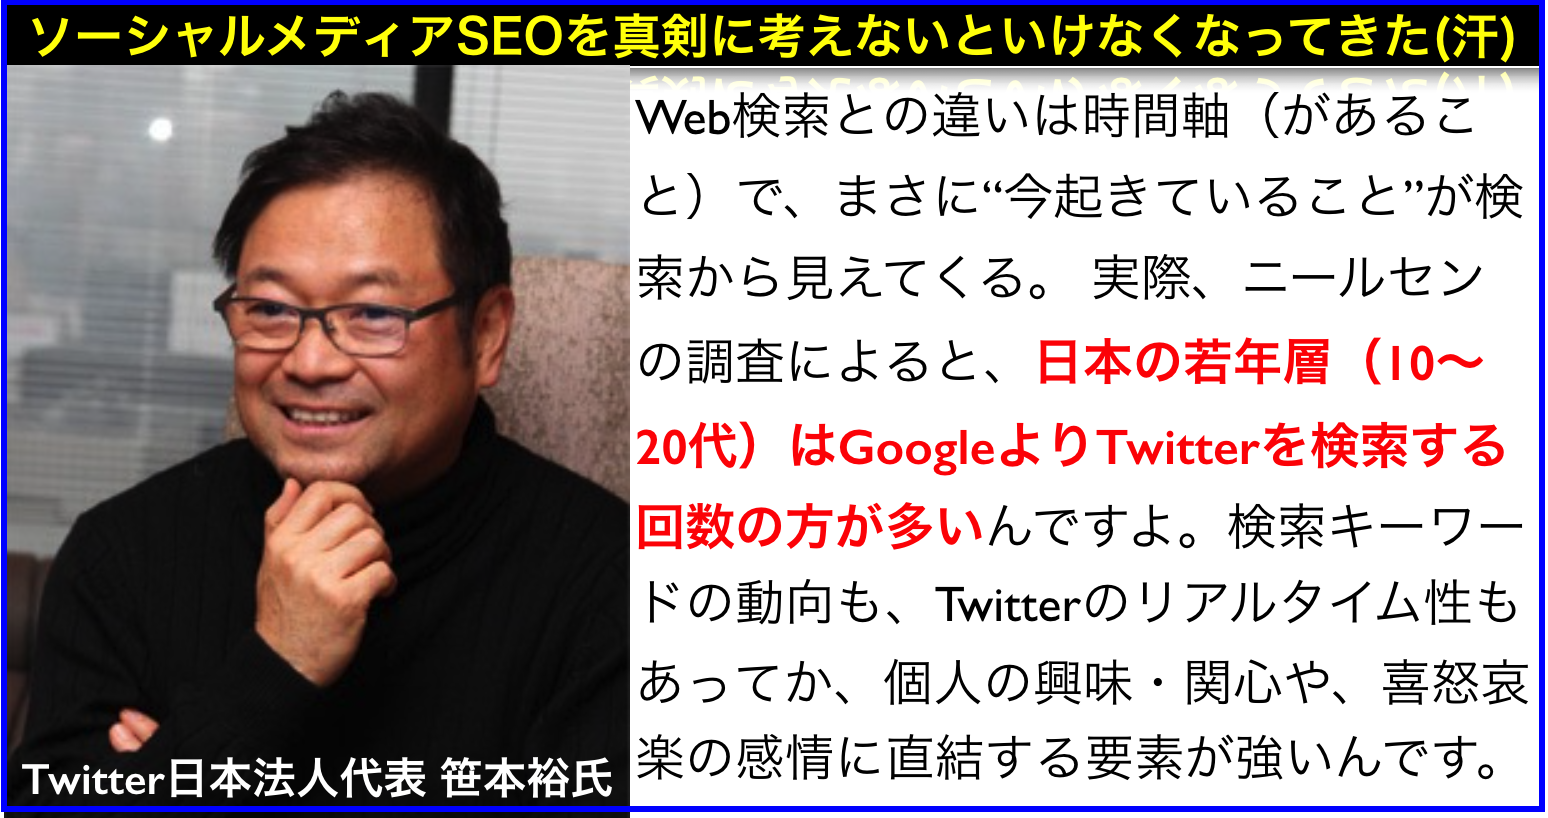 日本の10･20代はGoogleよりTwitterで検索する回数が多い